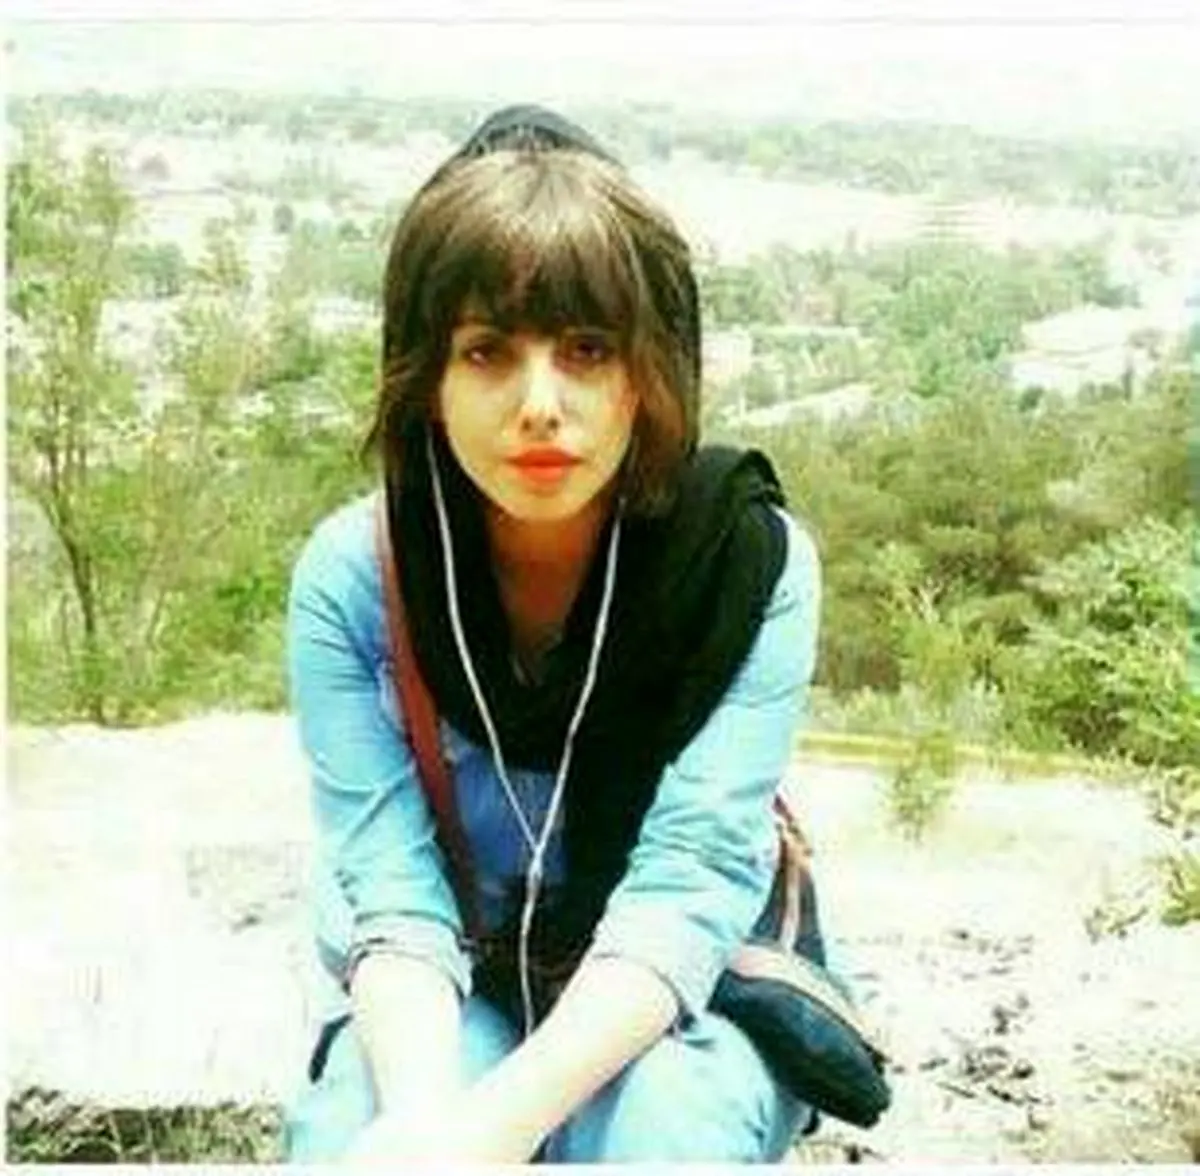 دختر ایرانی بعد از 50 عمل جراحی به جای آنجلینا جولی، عروس مرده شد+عکس